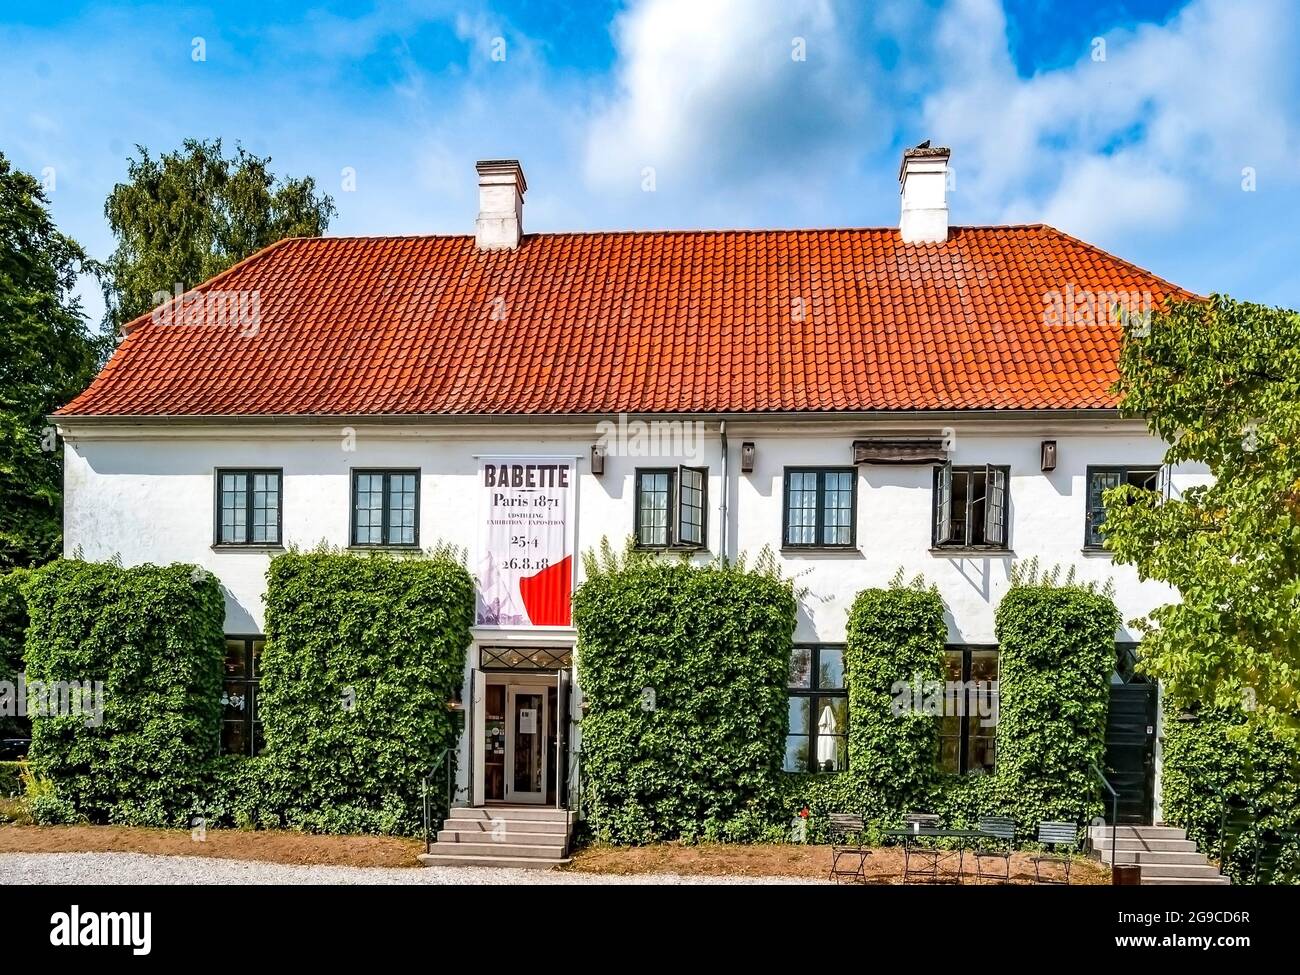 Die façade des Karen Blixen Museet, einem Museum, das der dänischen Schriftstellerin Isak Dinesen gewidmet ist und in ihrem ehemaligen Haus in Rungsted, Dänemark, untergebracht war Stockfoto